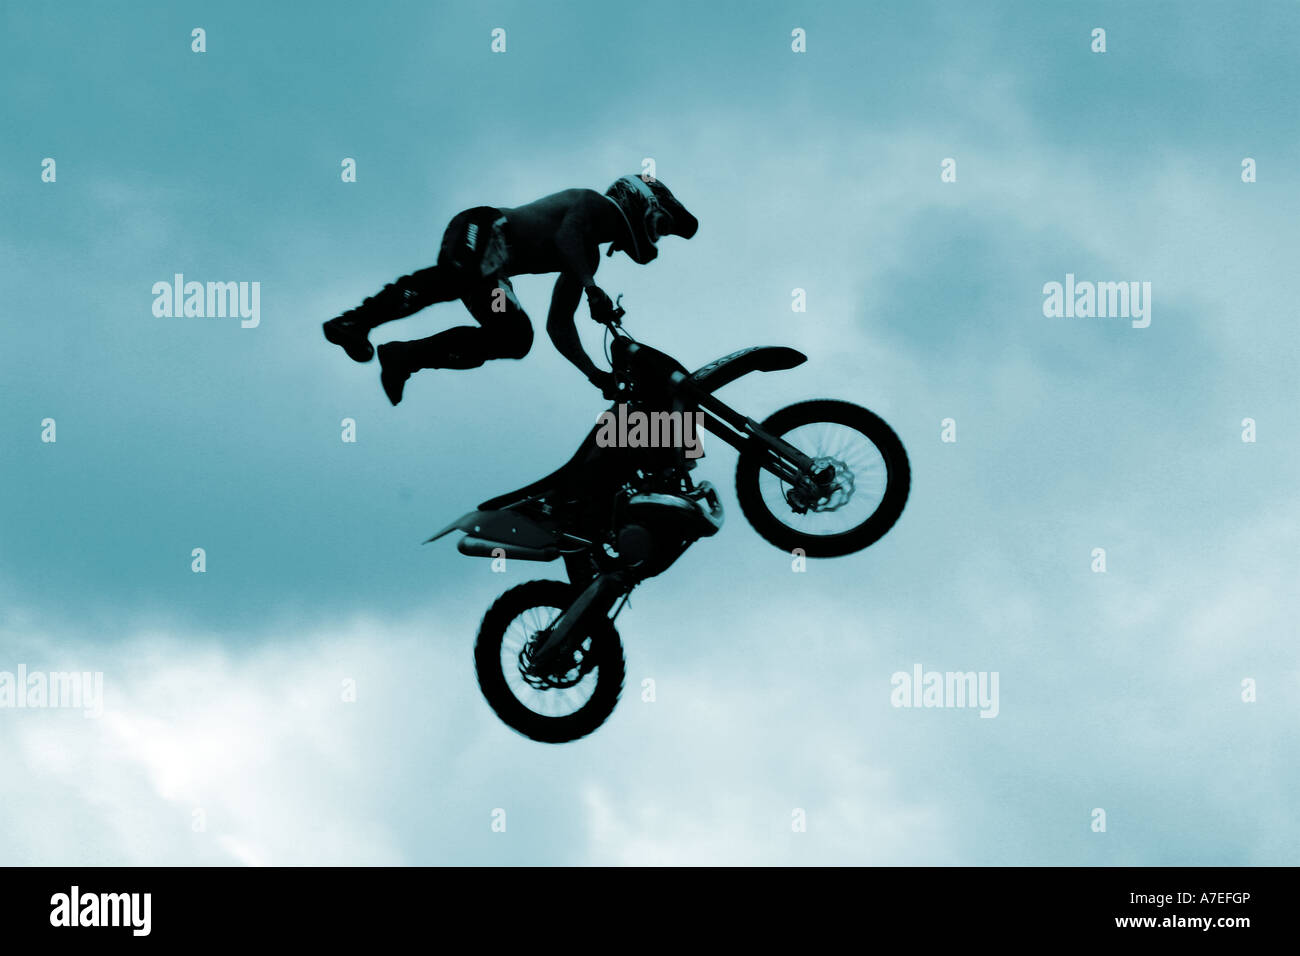 Wagen Sie Teufel Motocross Mann auf einen Sprung in der Luft - kein Release erforderlich als Person unkenntlich Motorrad Stockfoto